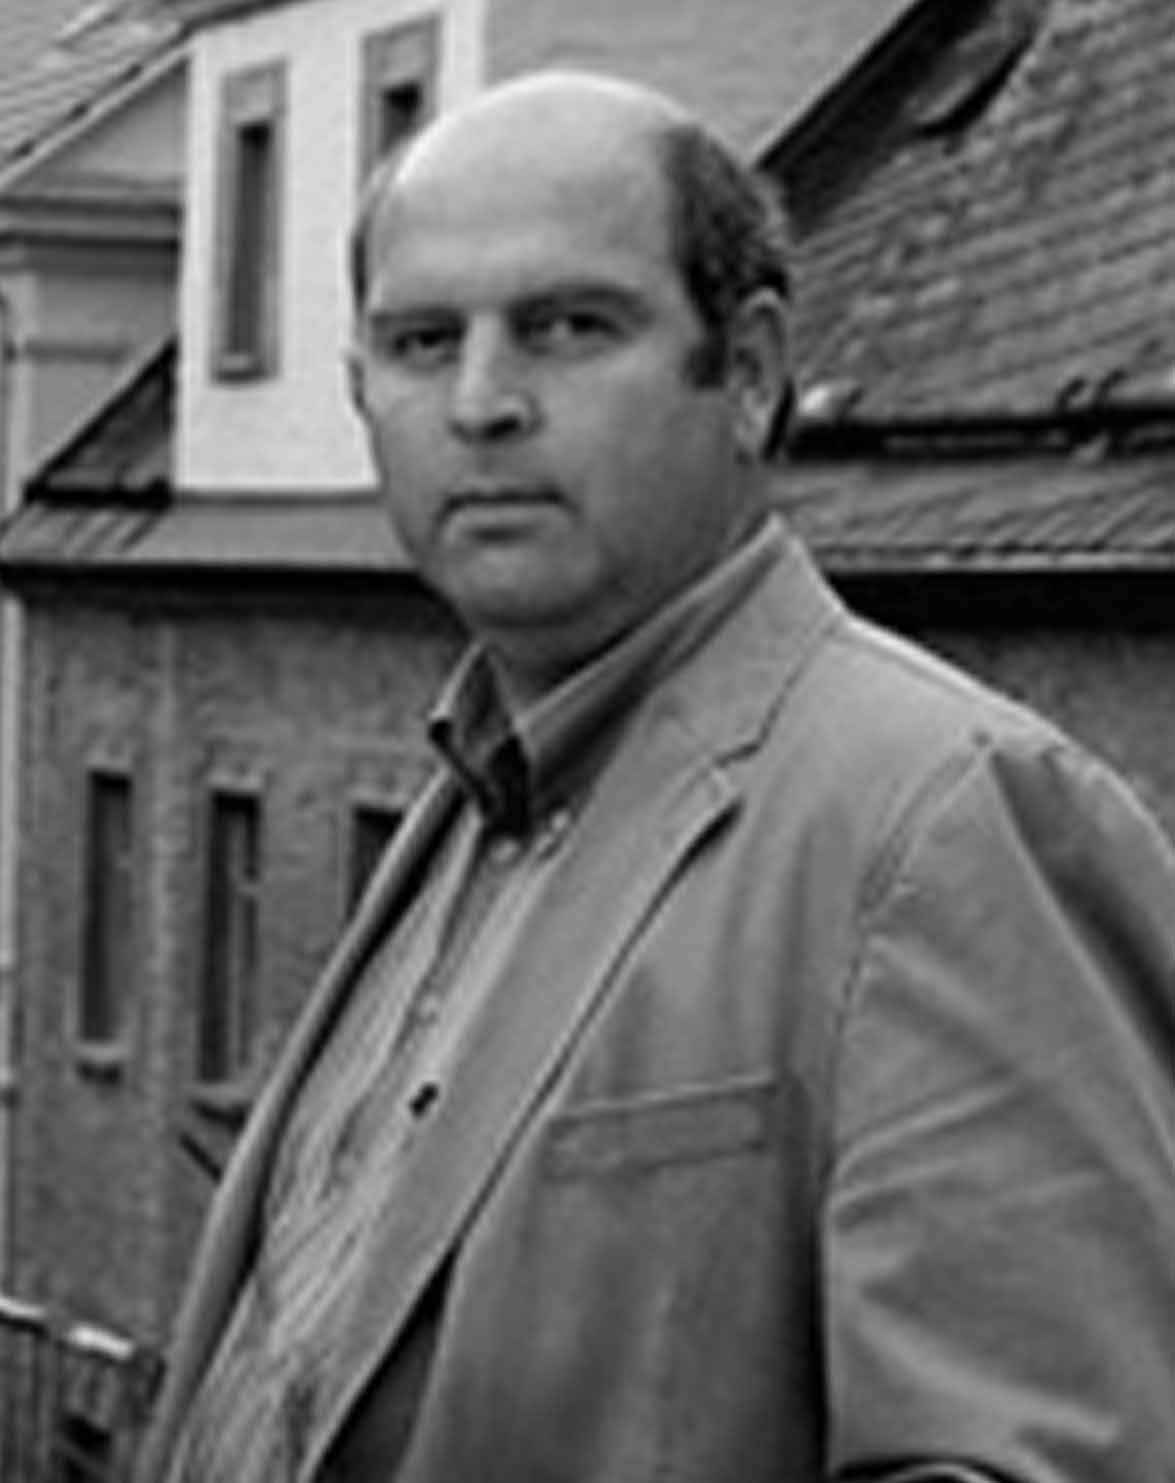 Jörg Reinhardt